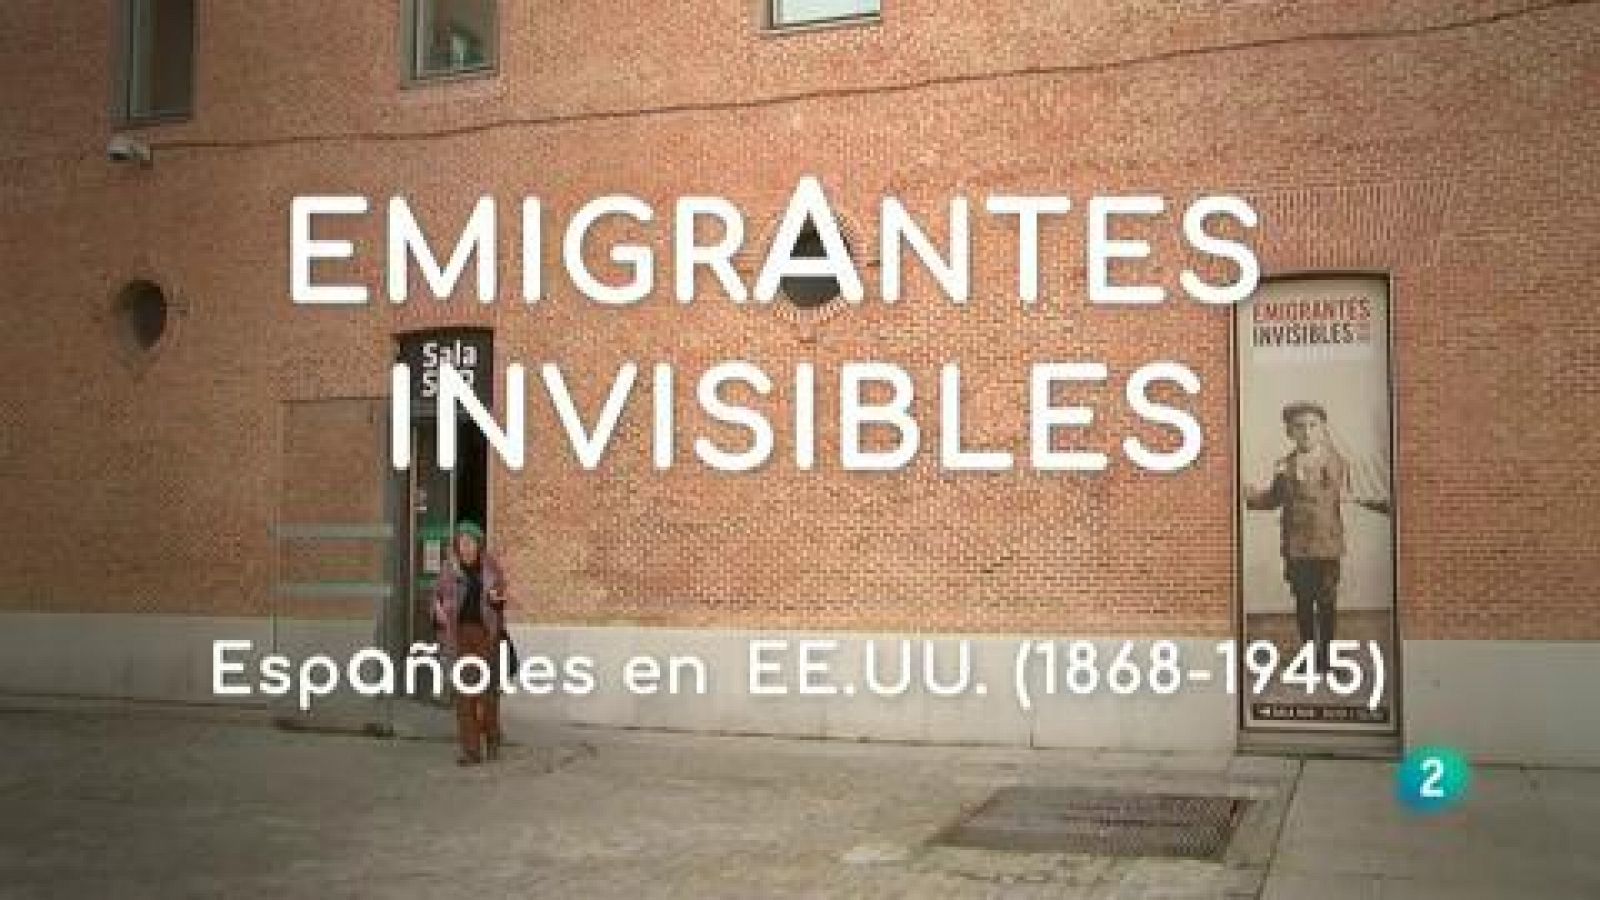 La aventura del saber - Exposición 'Emigrantes invisibles'